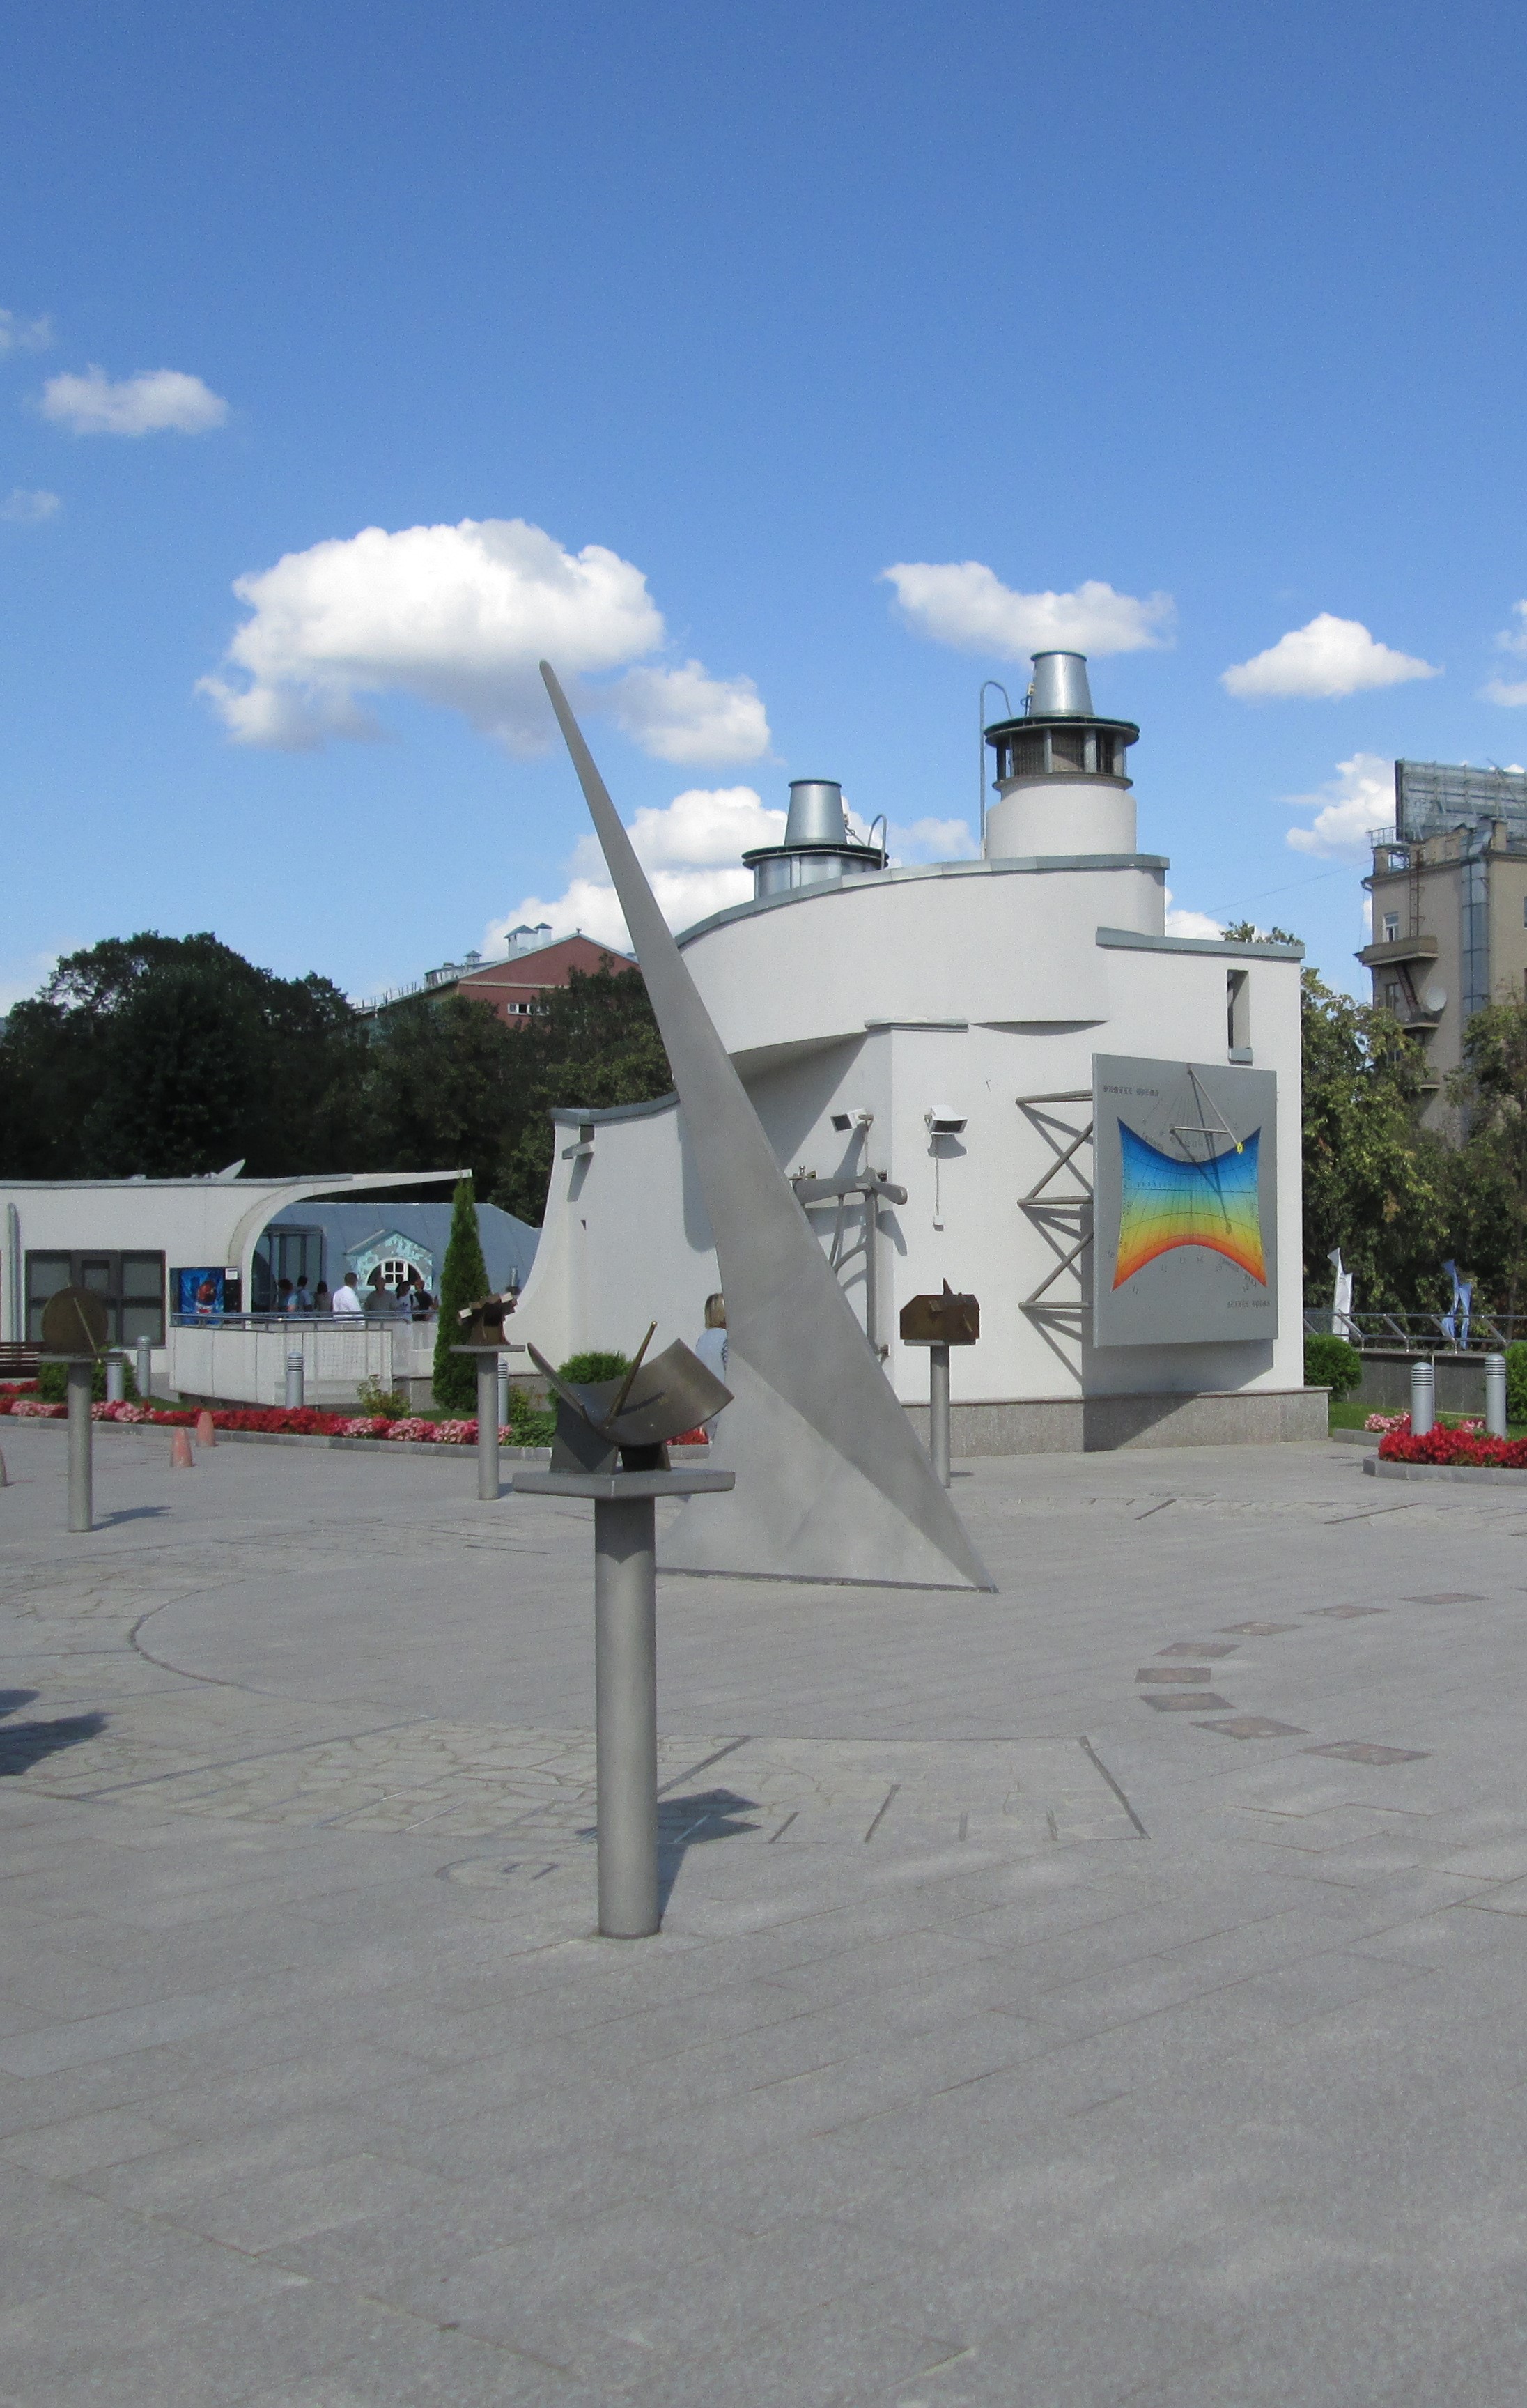  Часть коллекции солнечных часов, размещенной в парке неба Московского планетария. 2012 г. Фото автора.